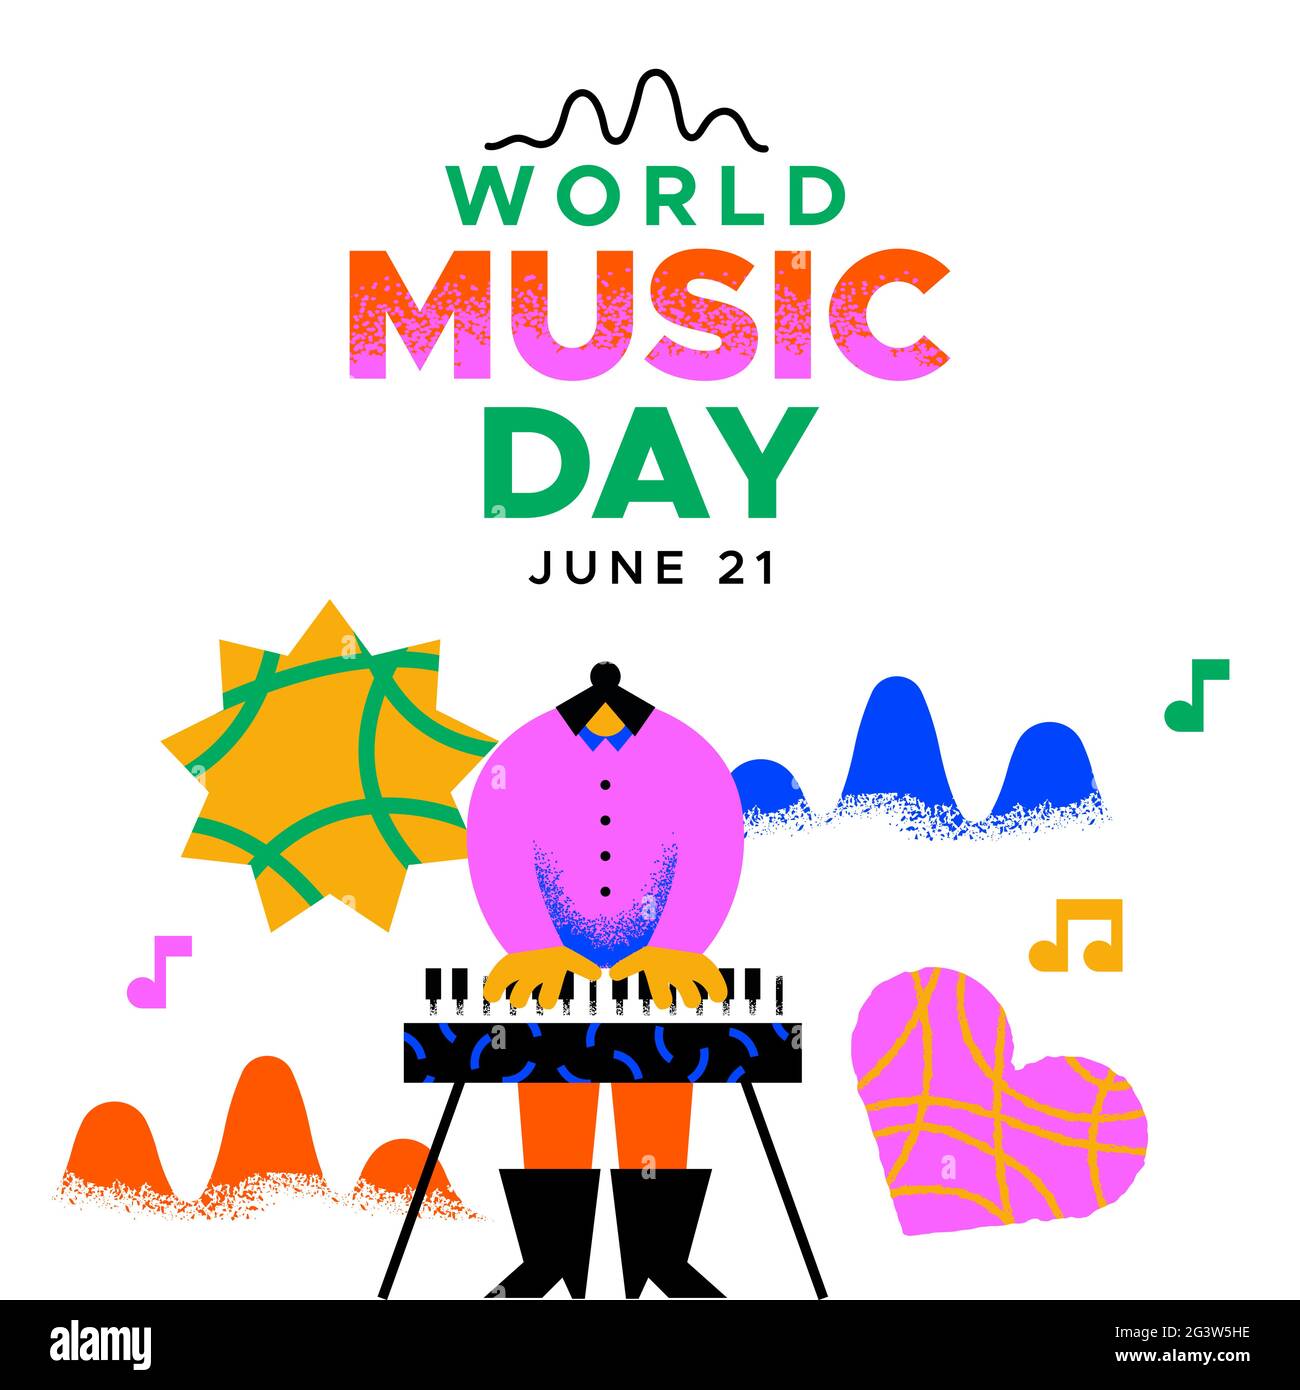 World Music Day Event Banner Illustration der Frau Musiker Charakter Klavier spielen Keyboard mit kreativen musikalischen Dekoration Formen. Juni 21 Urlaub Stock Vektor